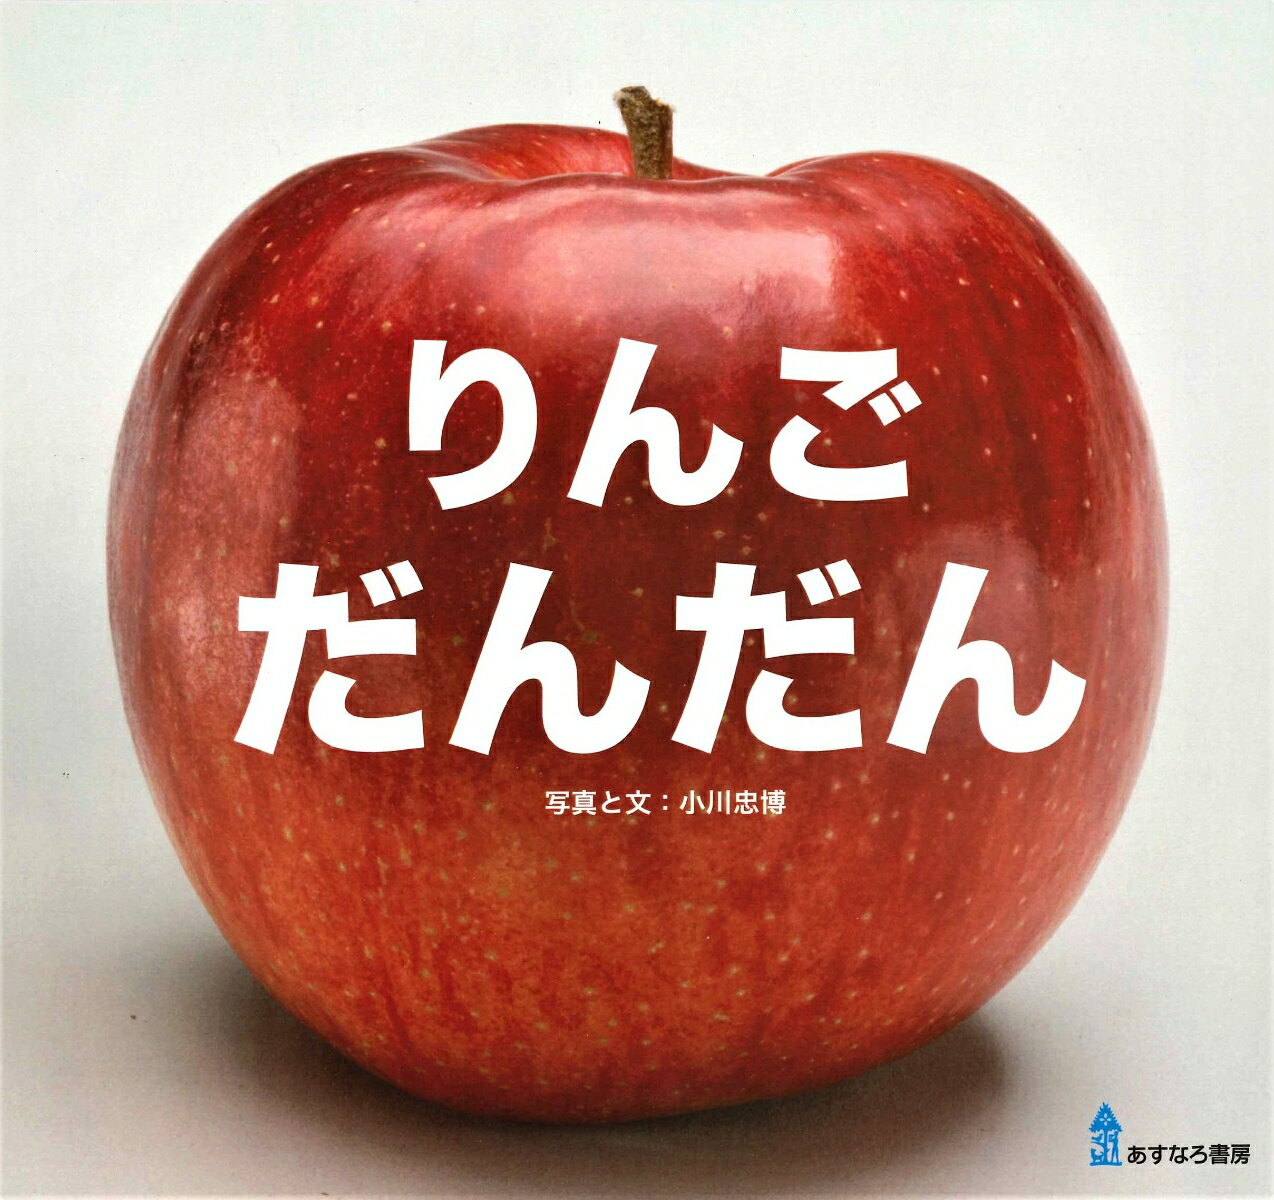 りんご だんだん [ 小川 忠博 ]